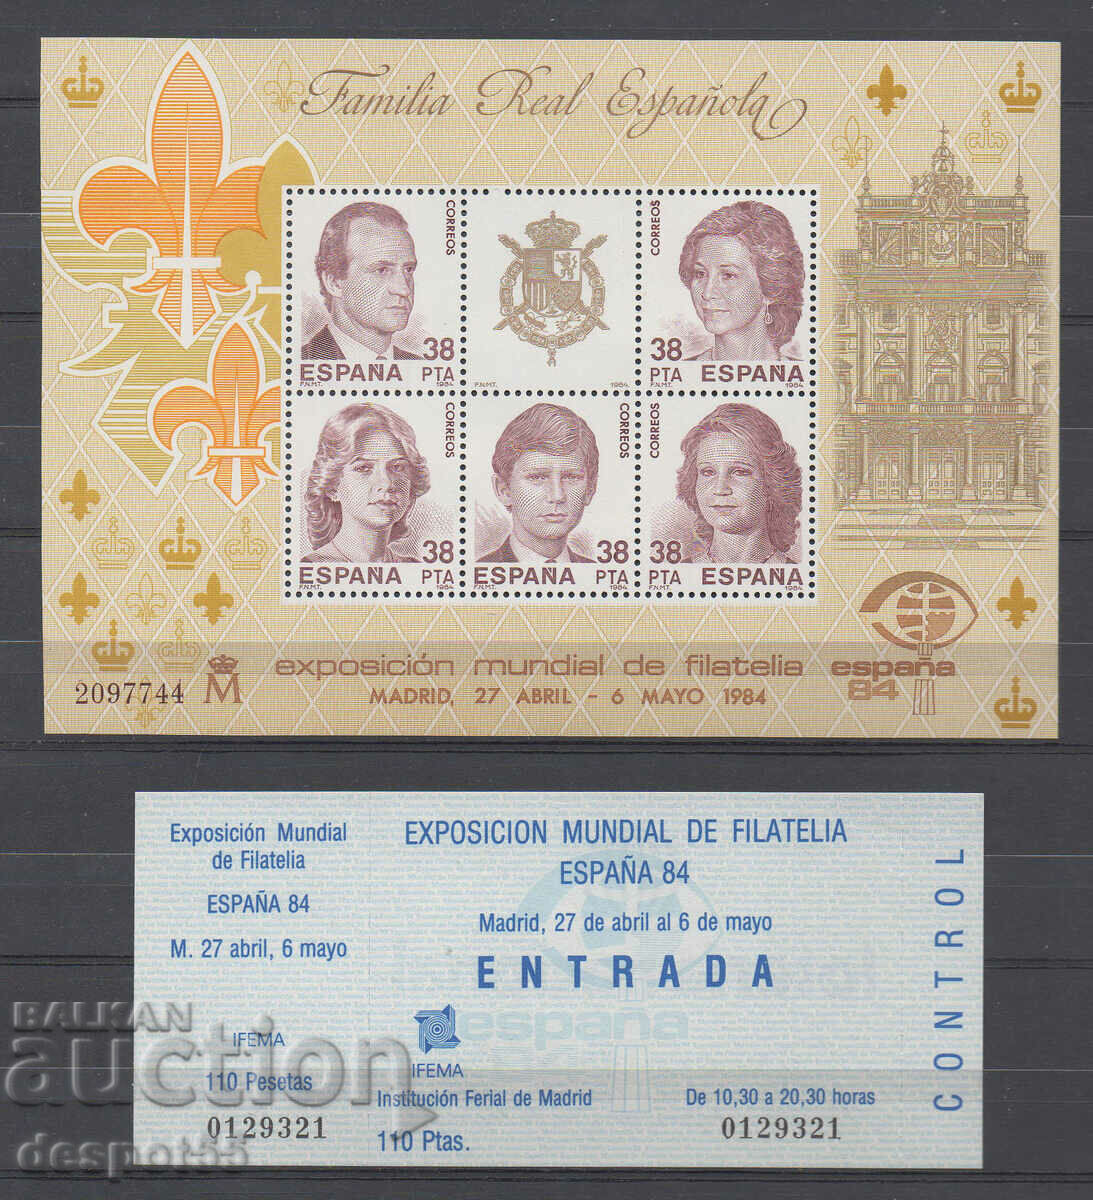 1984 Spain. Philatelic exhibition ESPANA '84, Madrid + Bonus